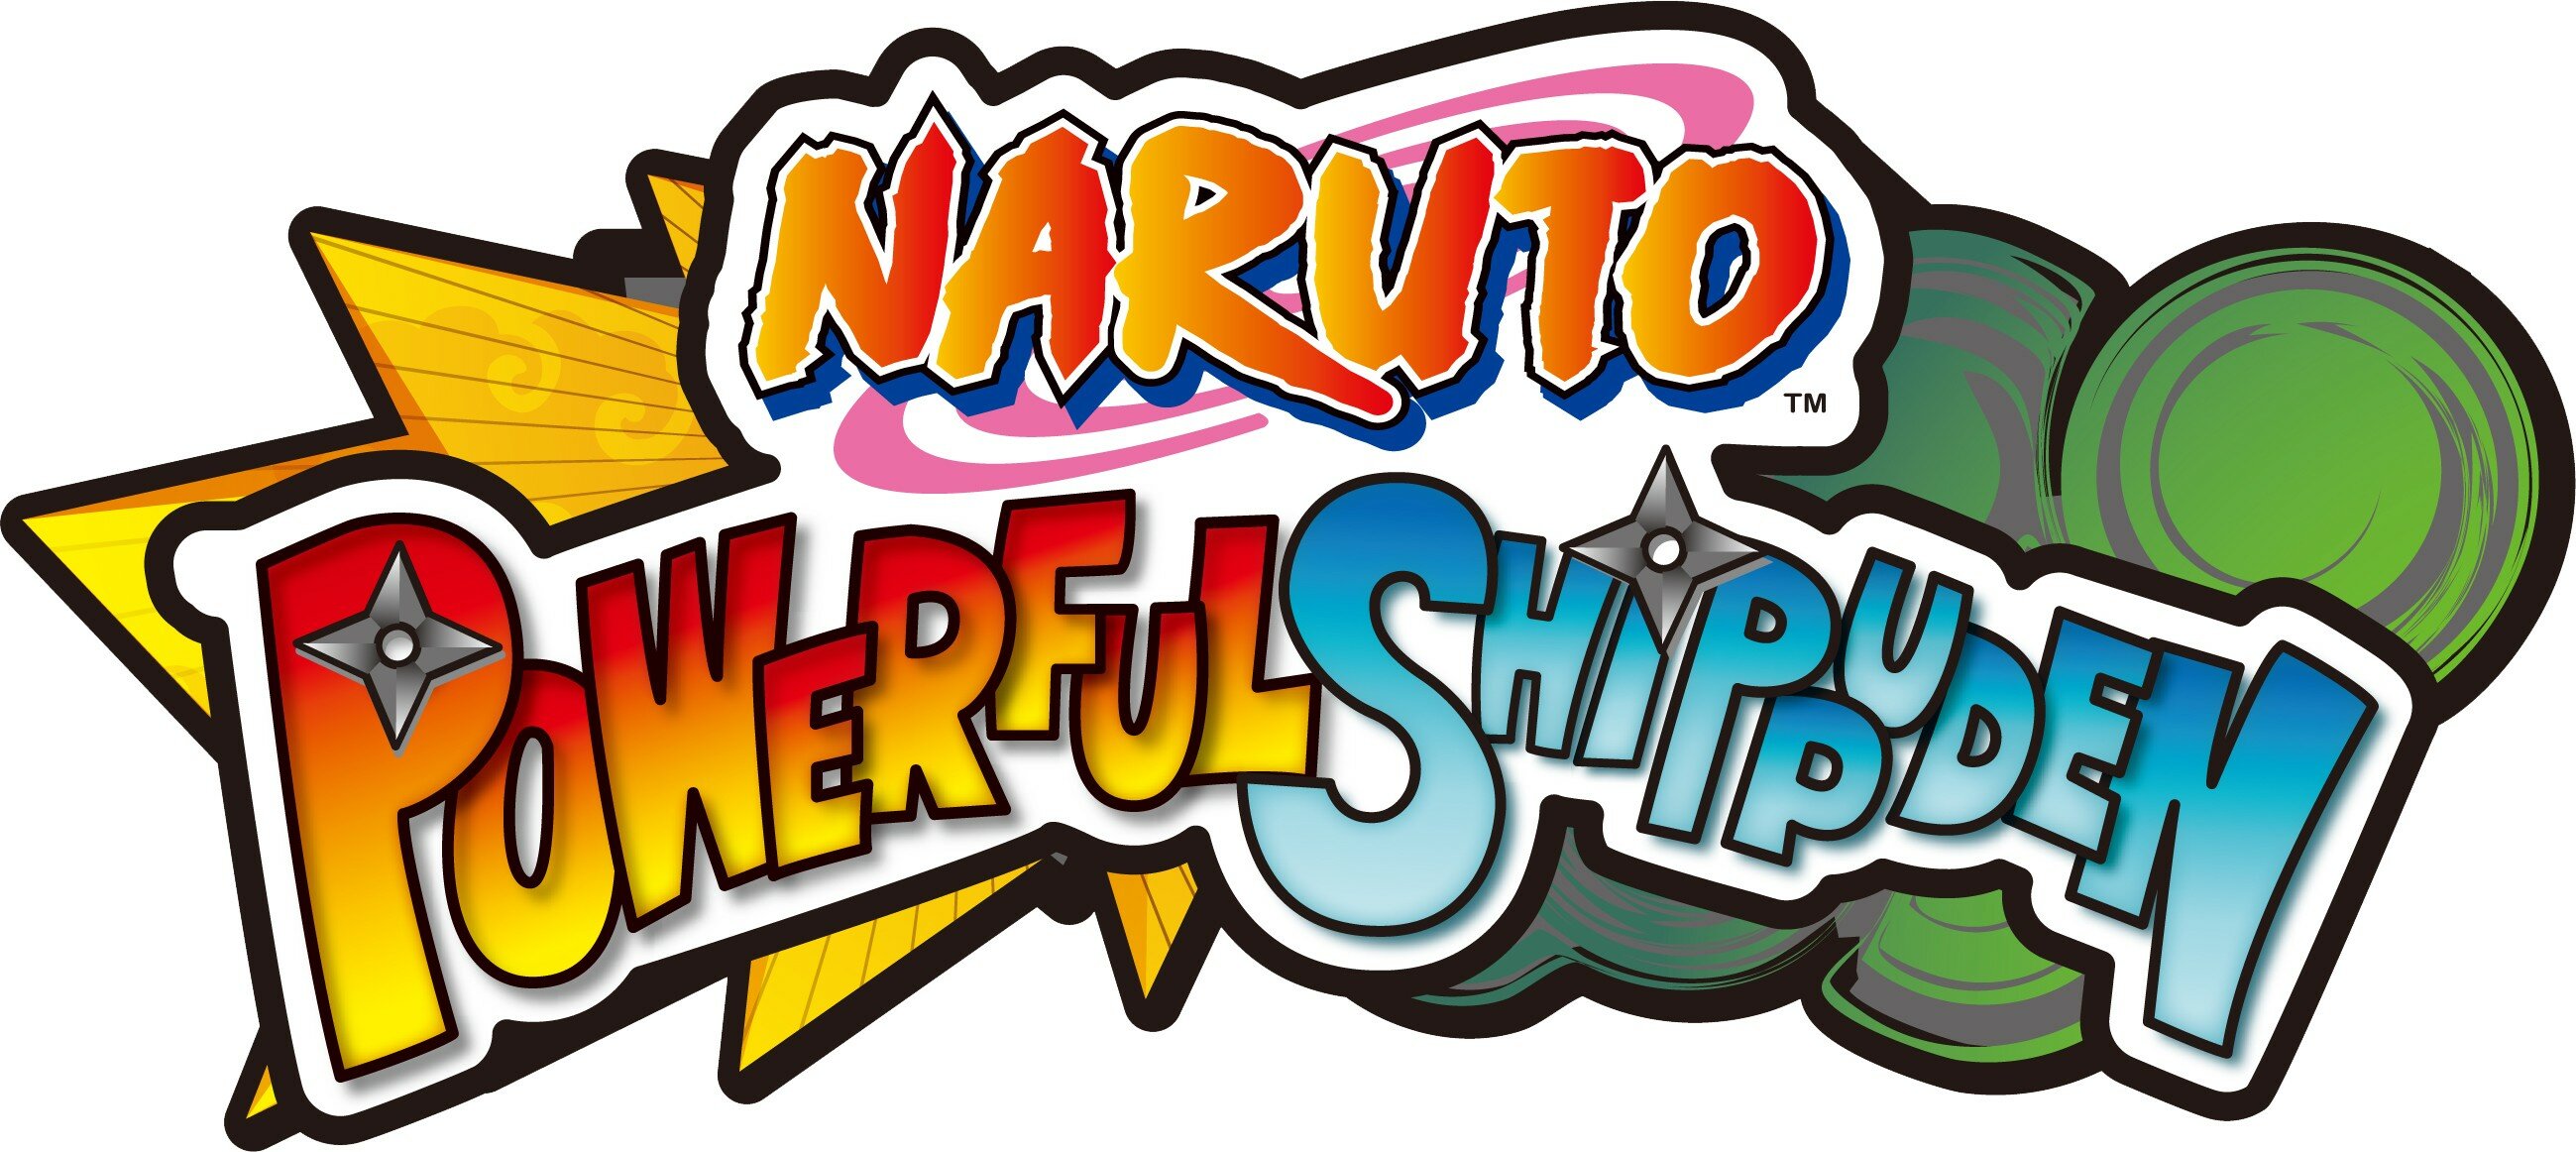 Naruto_Powerful_Shippuden_logo